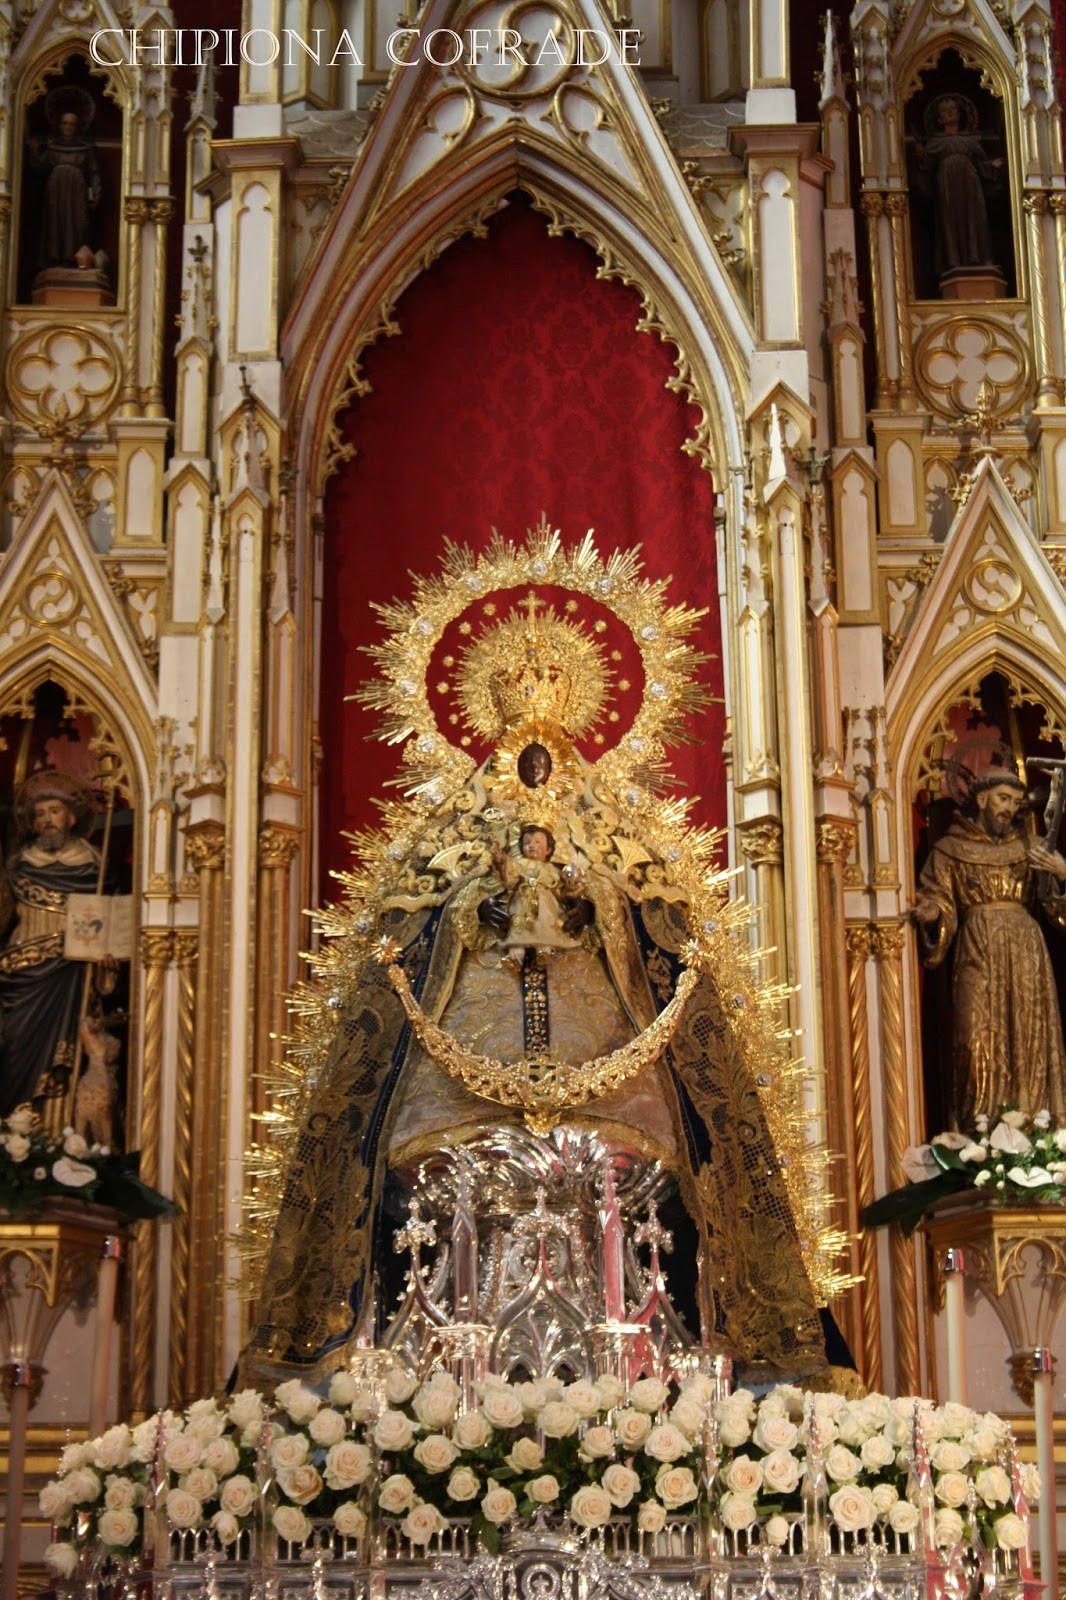 El santuario de Nuestra Señora de Regla es un monasterio y santuario localizado en Chipiona, España